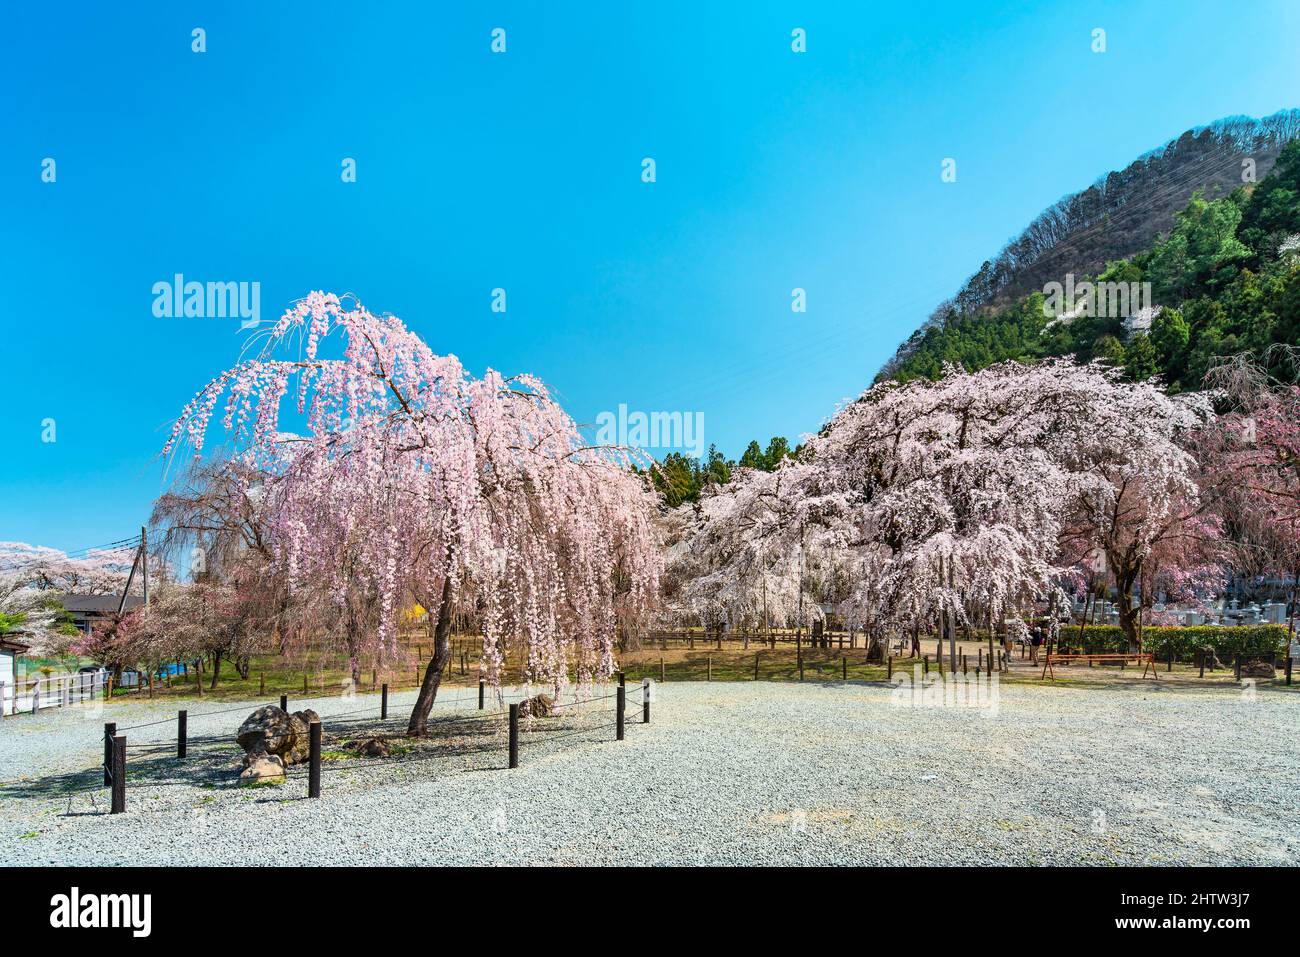 saitama, chichibu - march 26 2021: Japanese shidarezakura weeping cherry trees at foot of Mount Wakamiko in the Buddhist Seiunji Temple dedicated to R Stock Photo